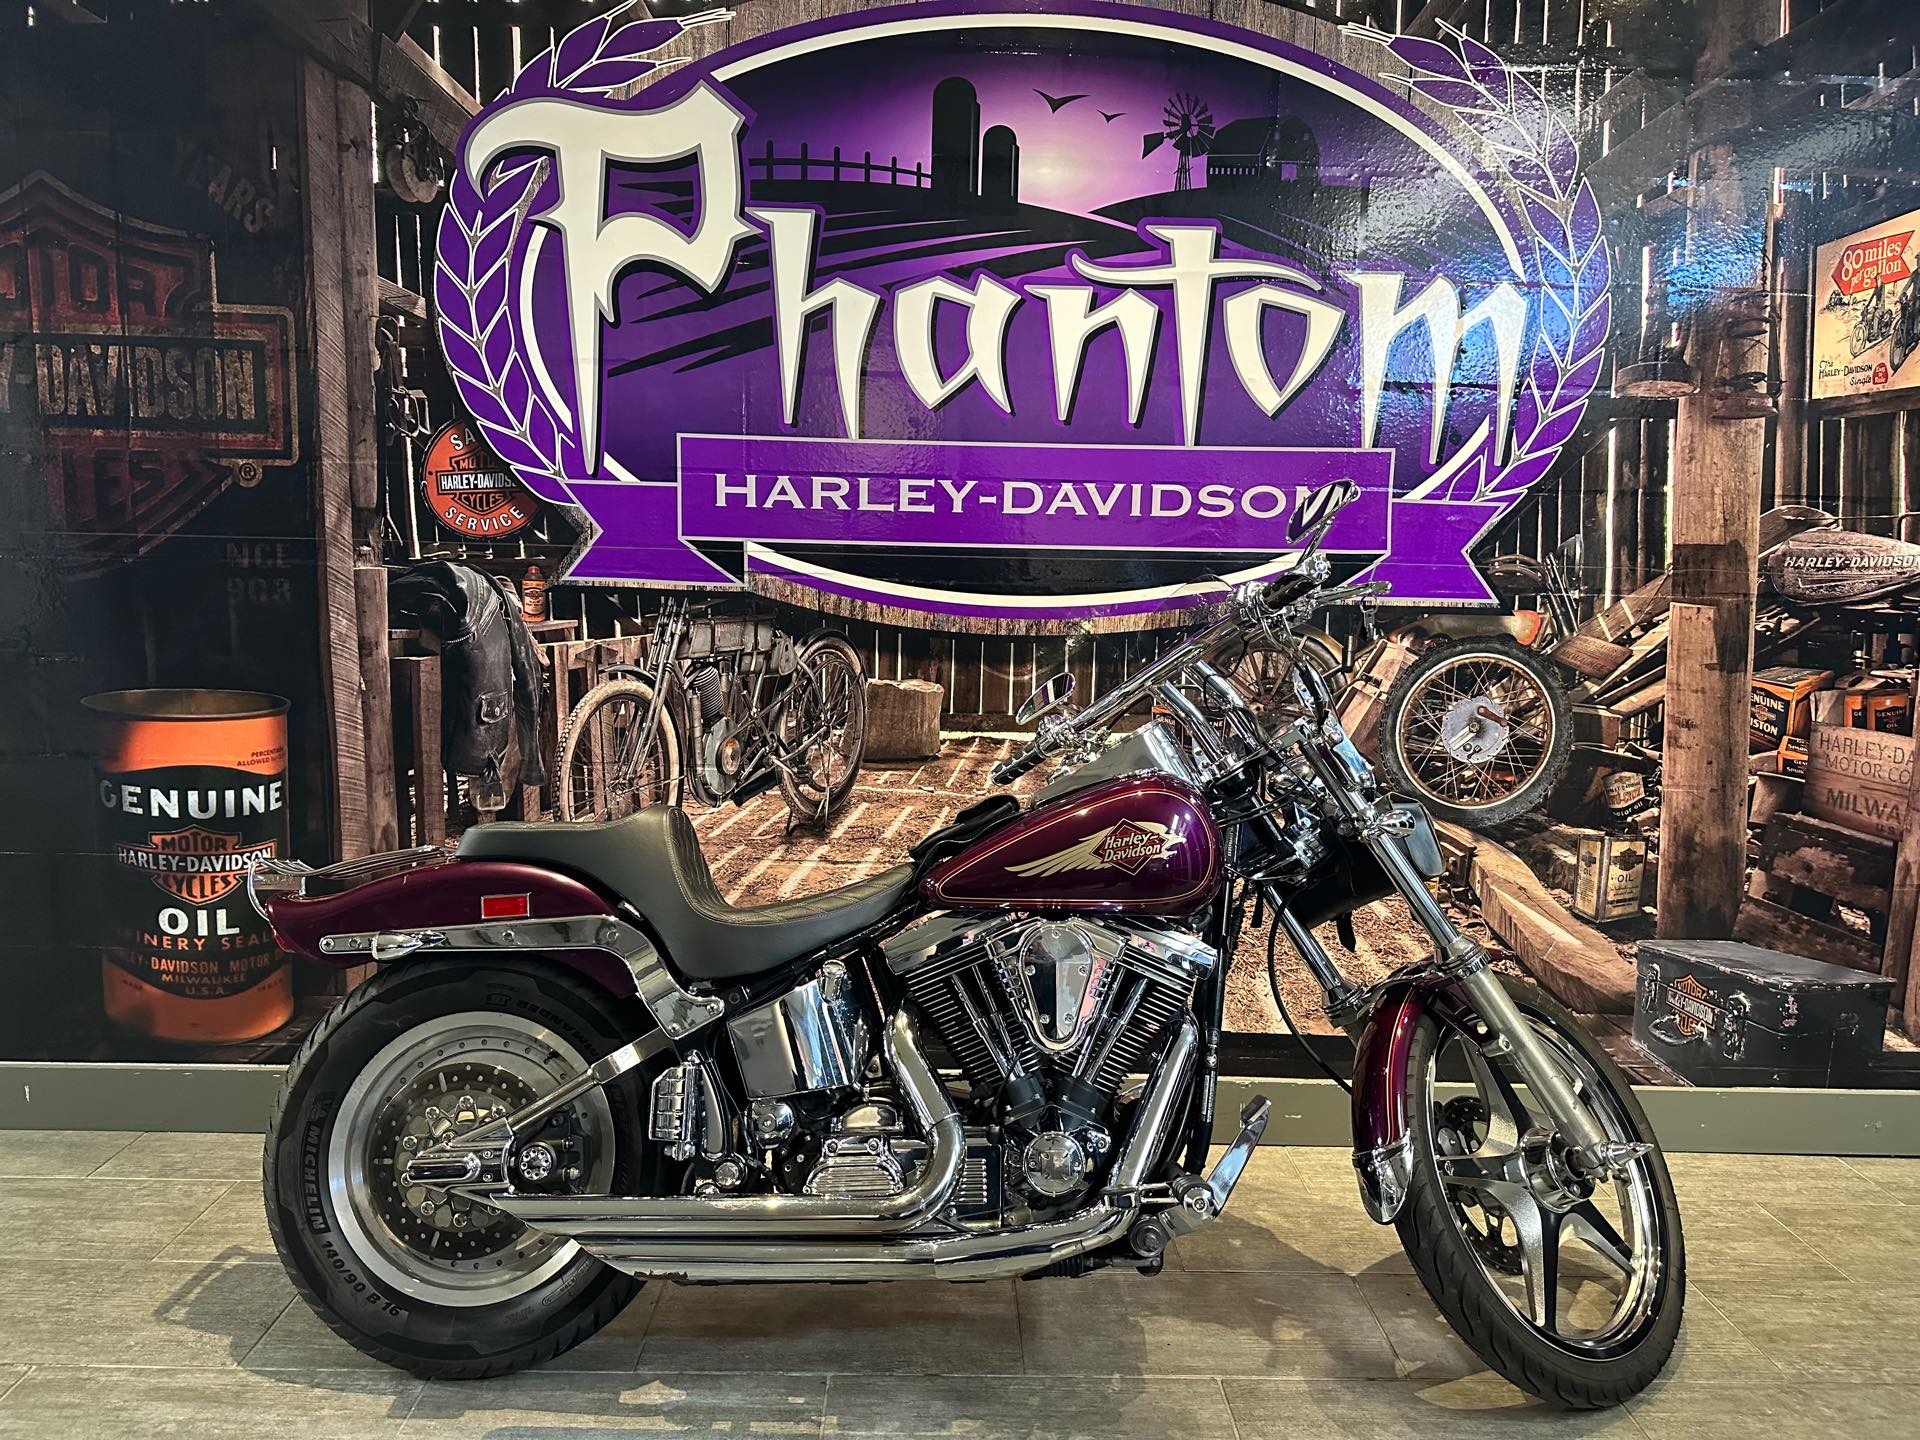 1997 Harley-Davidson FXSTC at Phantom Harley-Davidson